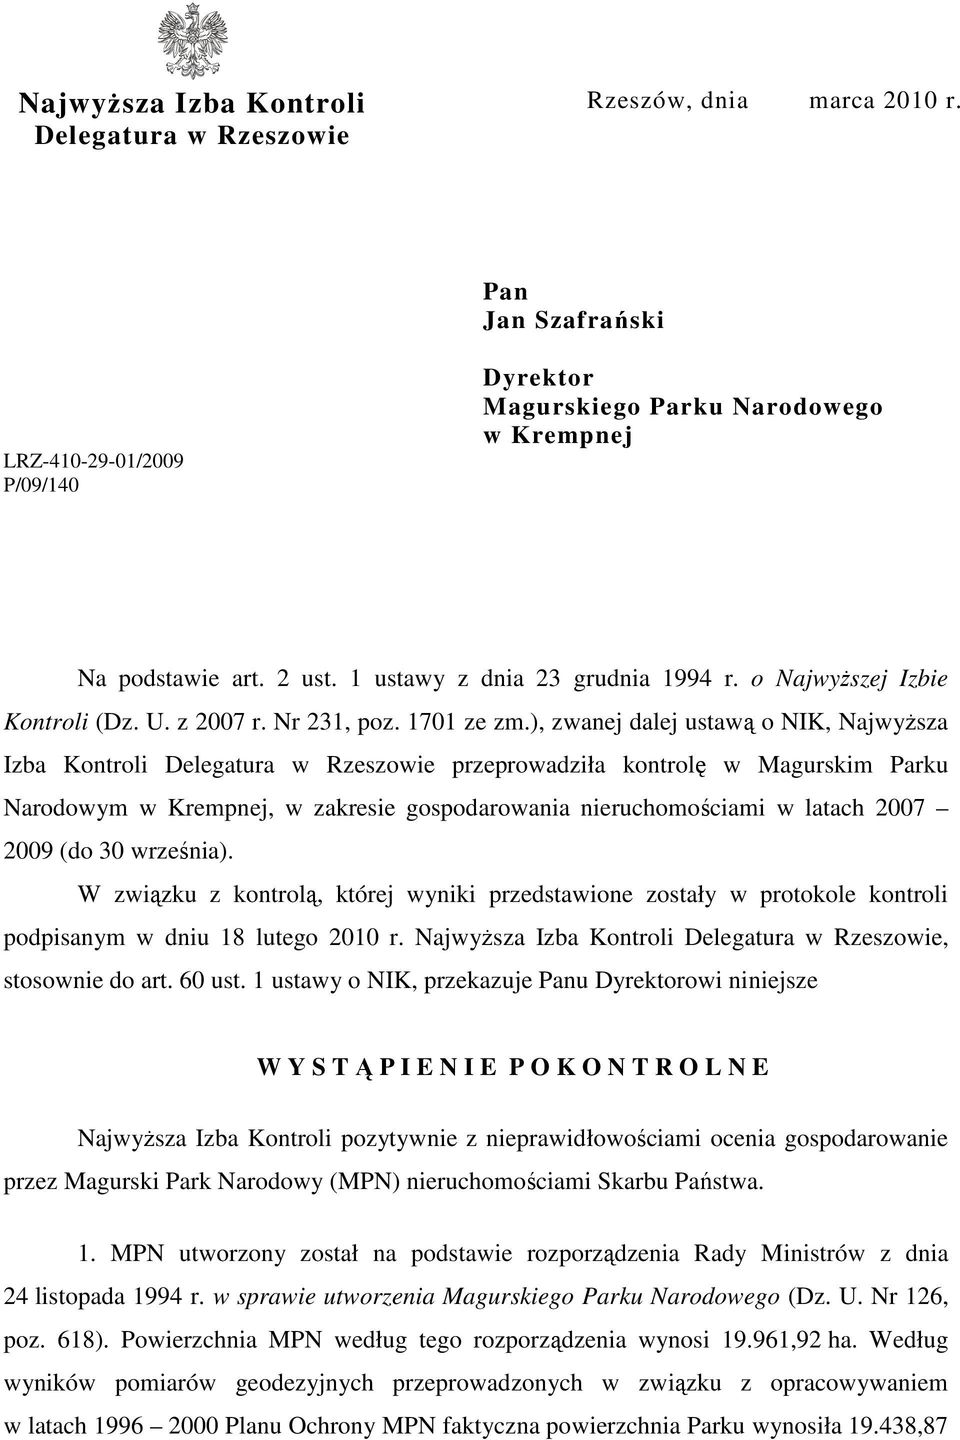 ), zwanej dalej ustawą o NIK, NajwyŜsza Izba Kontroli Delegatura w Rzeszowie przeprowadziła kontrolę w Magurskim Parku Narodowym w Krempnej, w zakresie gospodarowania nieruchomościami w latach 2007